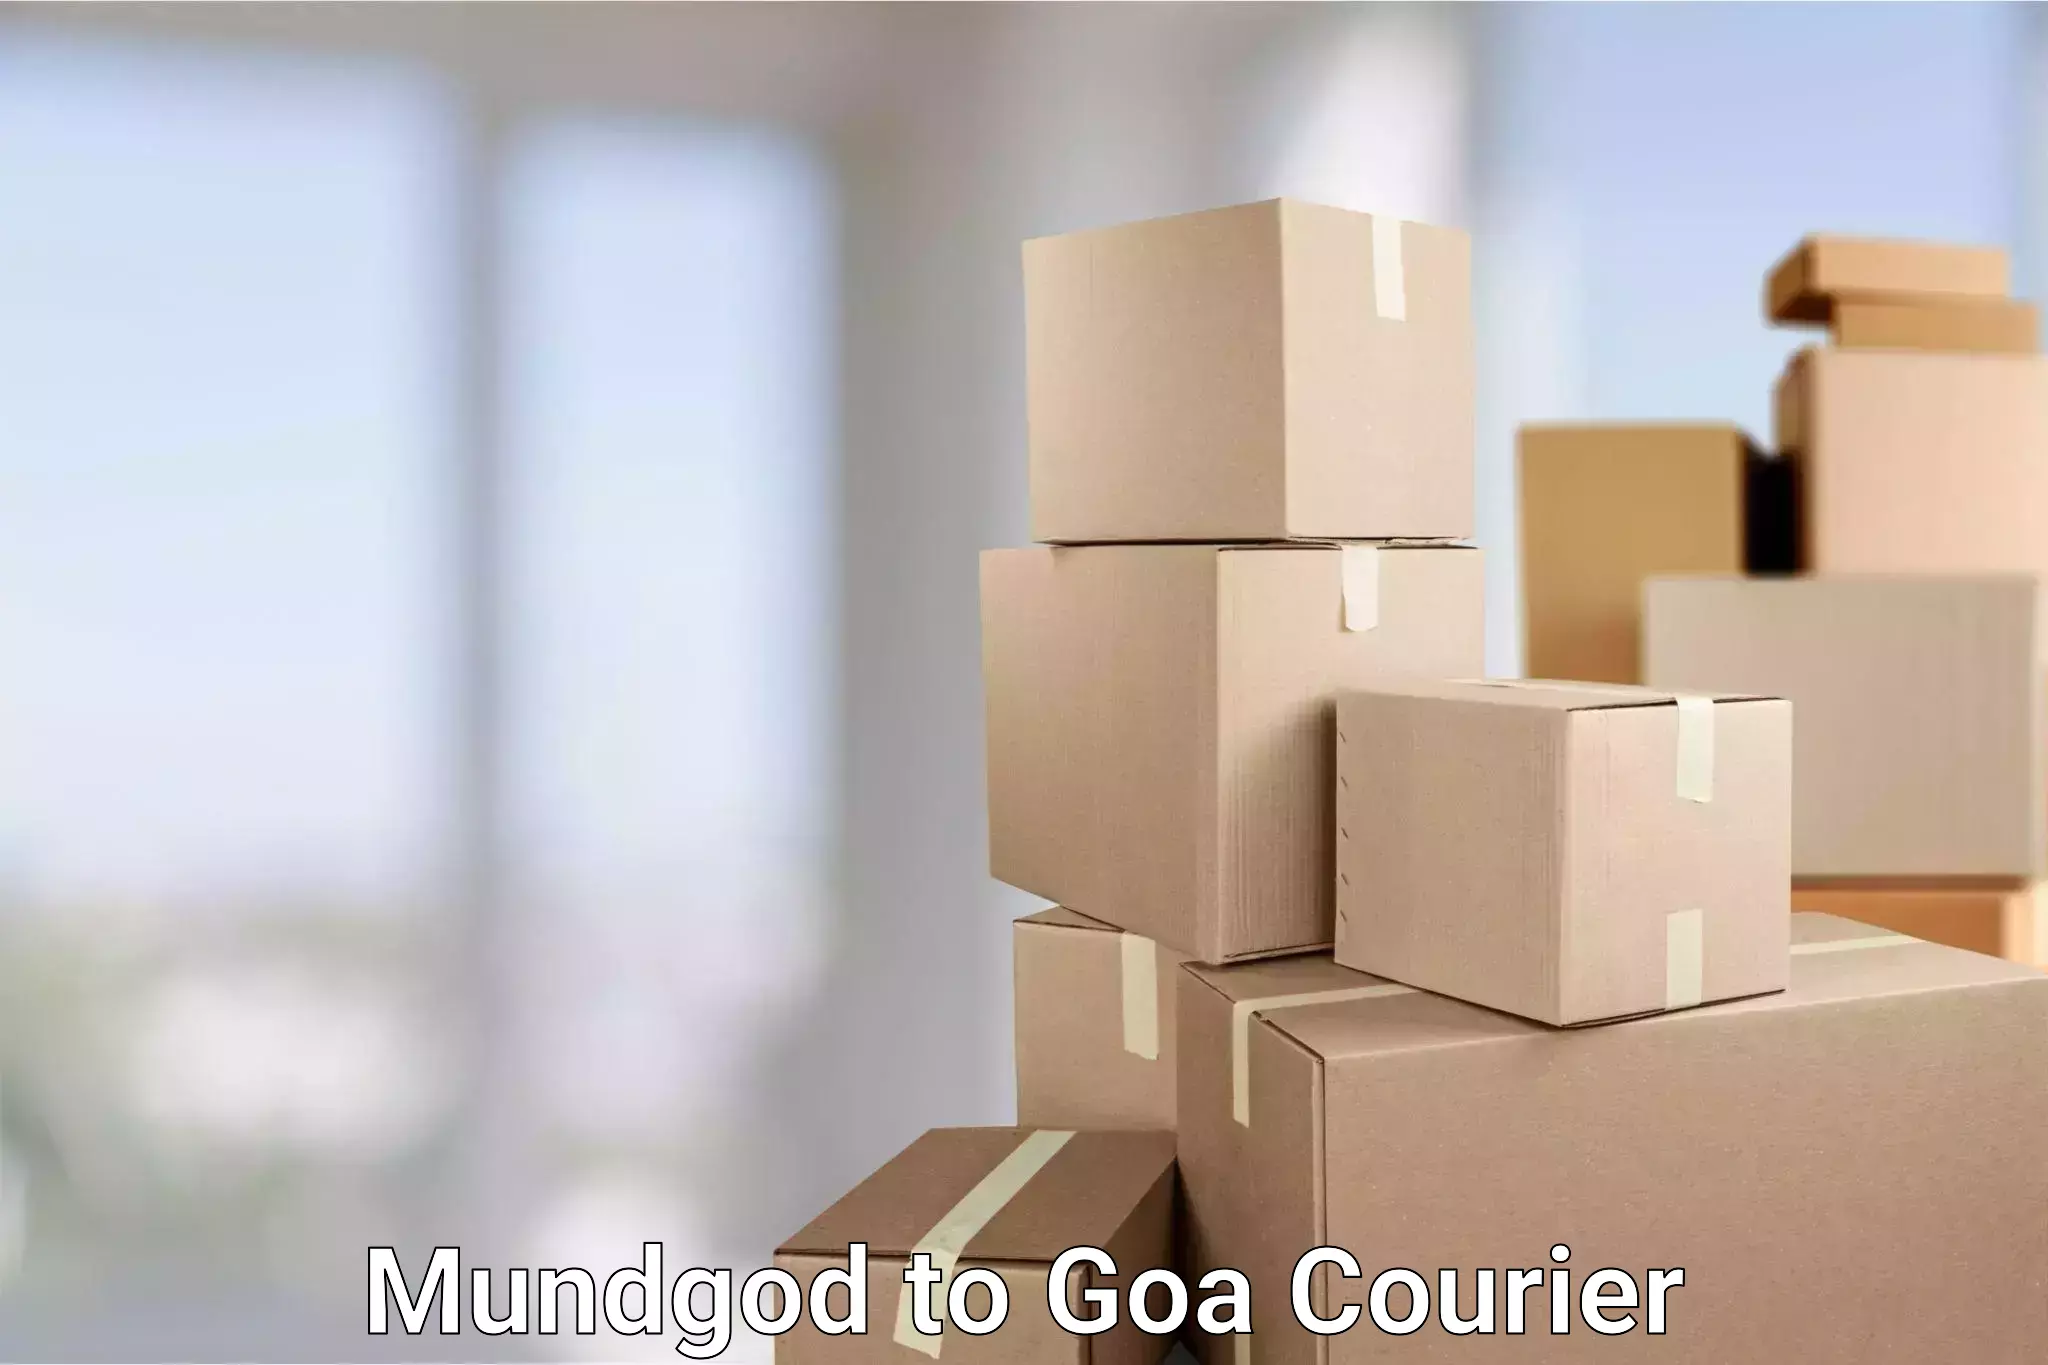 Efficient courier operations Mundgod to Goa University